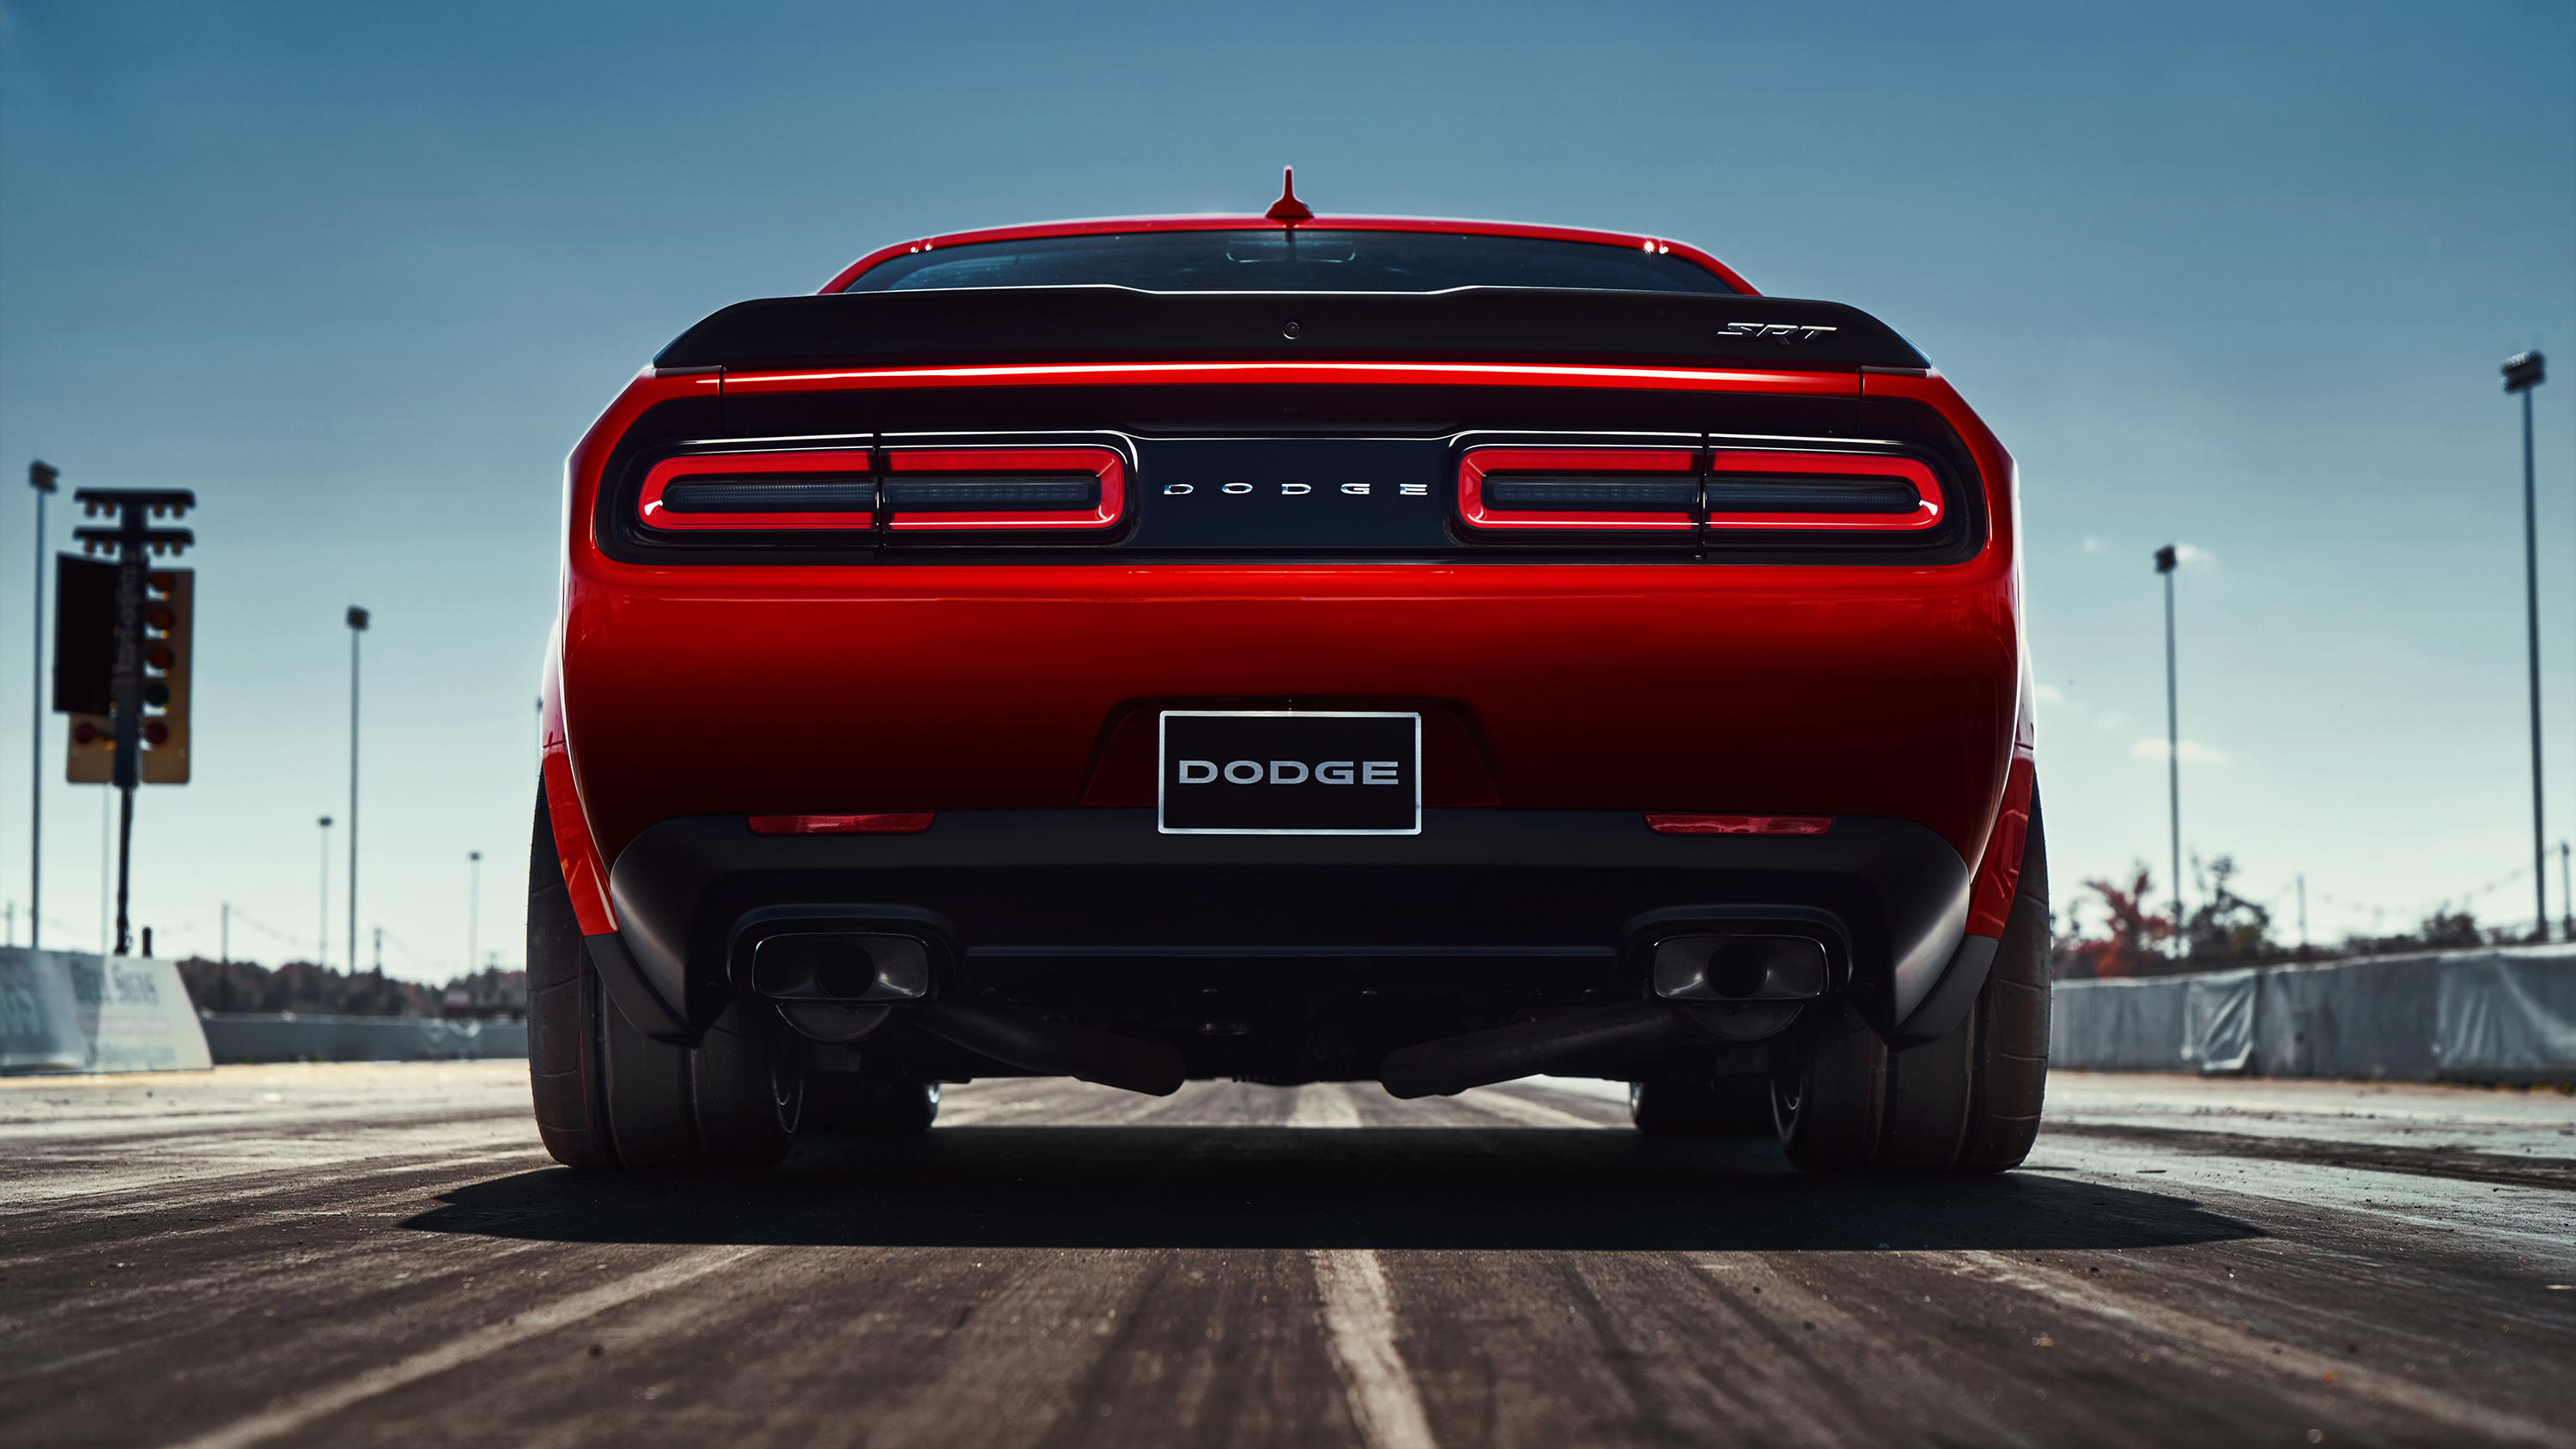 2018 Dodge Challenger Srt Demon - 2019 Challenger Scat Pack Widebody , HD Wallpaper & Backgrounds